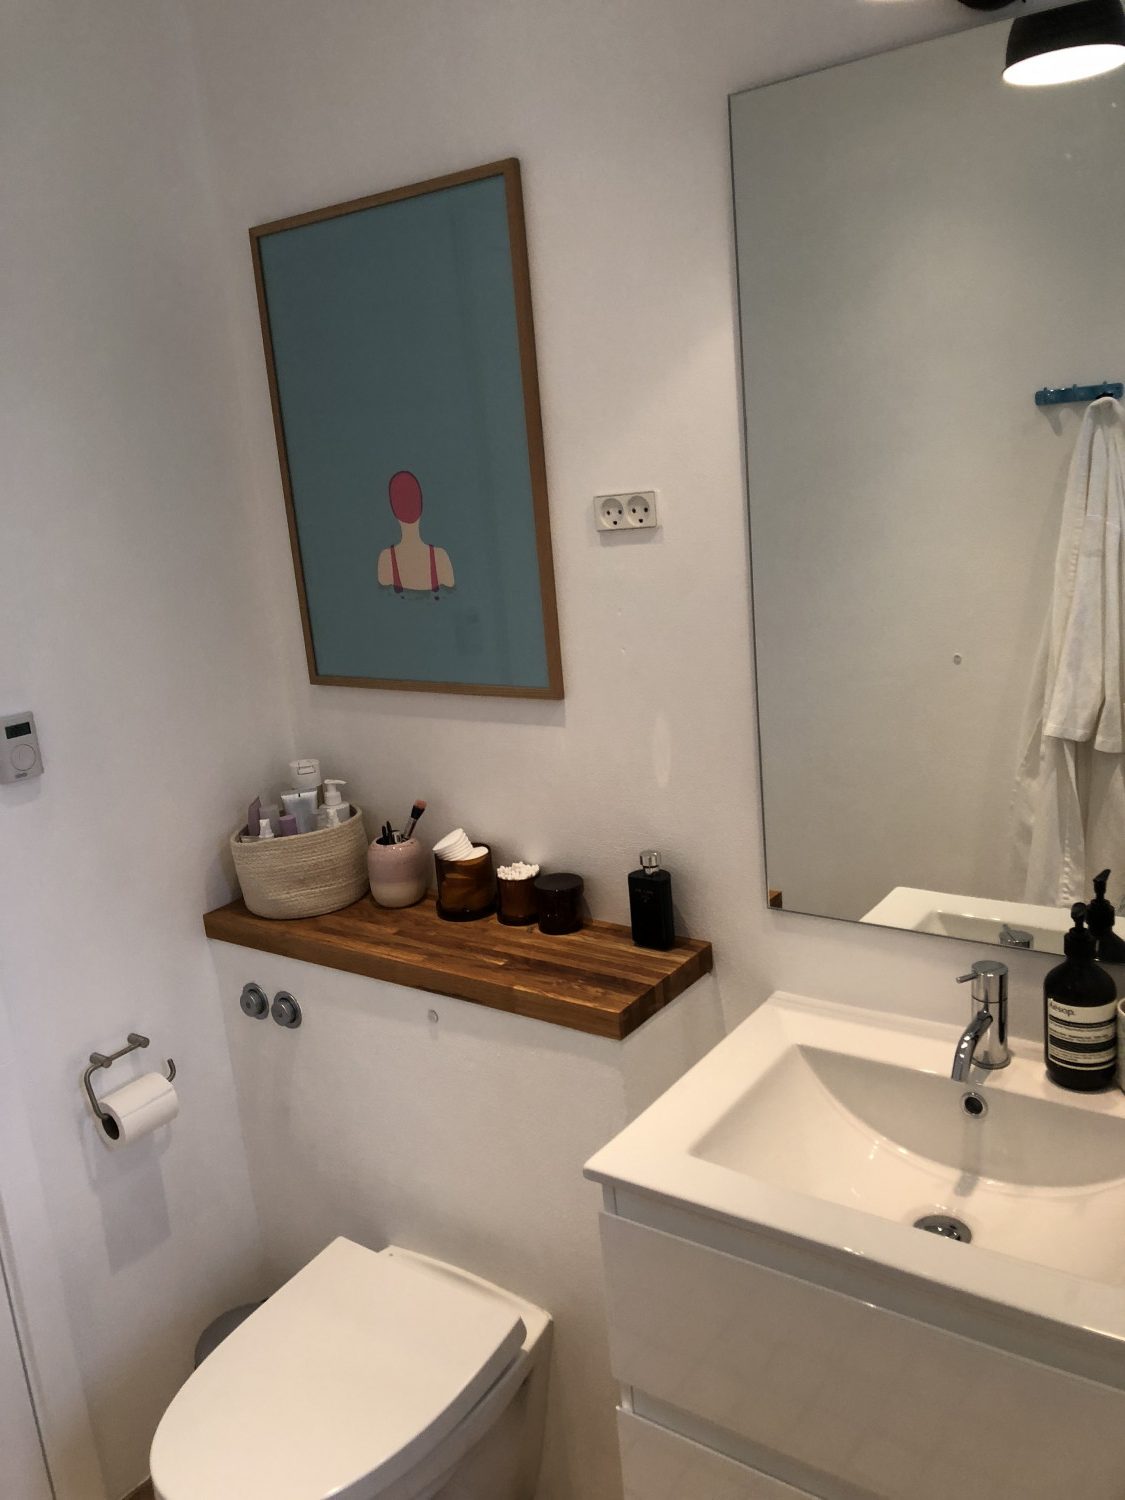 Så fik vi nyt badeværelse på en weekend – se forvandlingen | Boliglivet |  Bygge Madsen